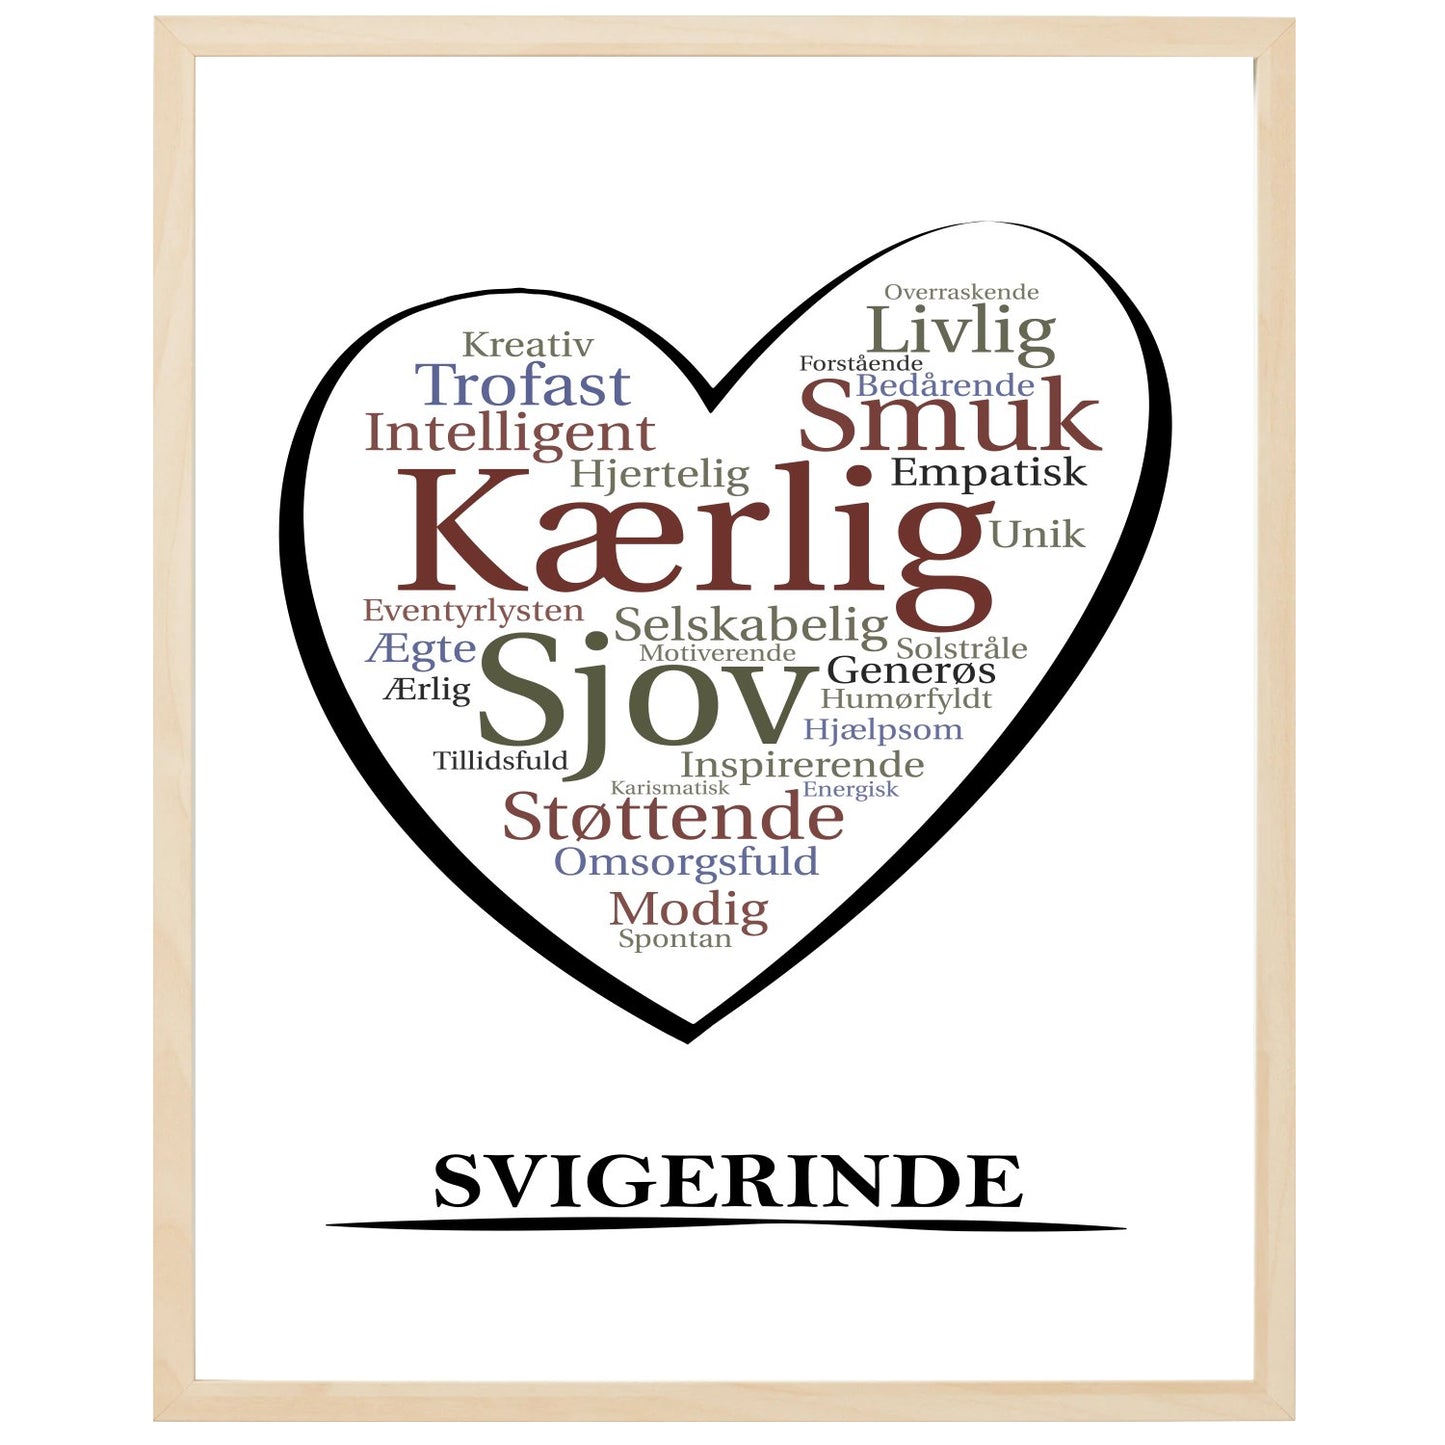 En plakat med overskriften Svigerinde, et hjerte og indeni hjertet mange positive ord som beskriver en Svigerinde